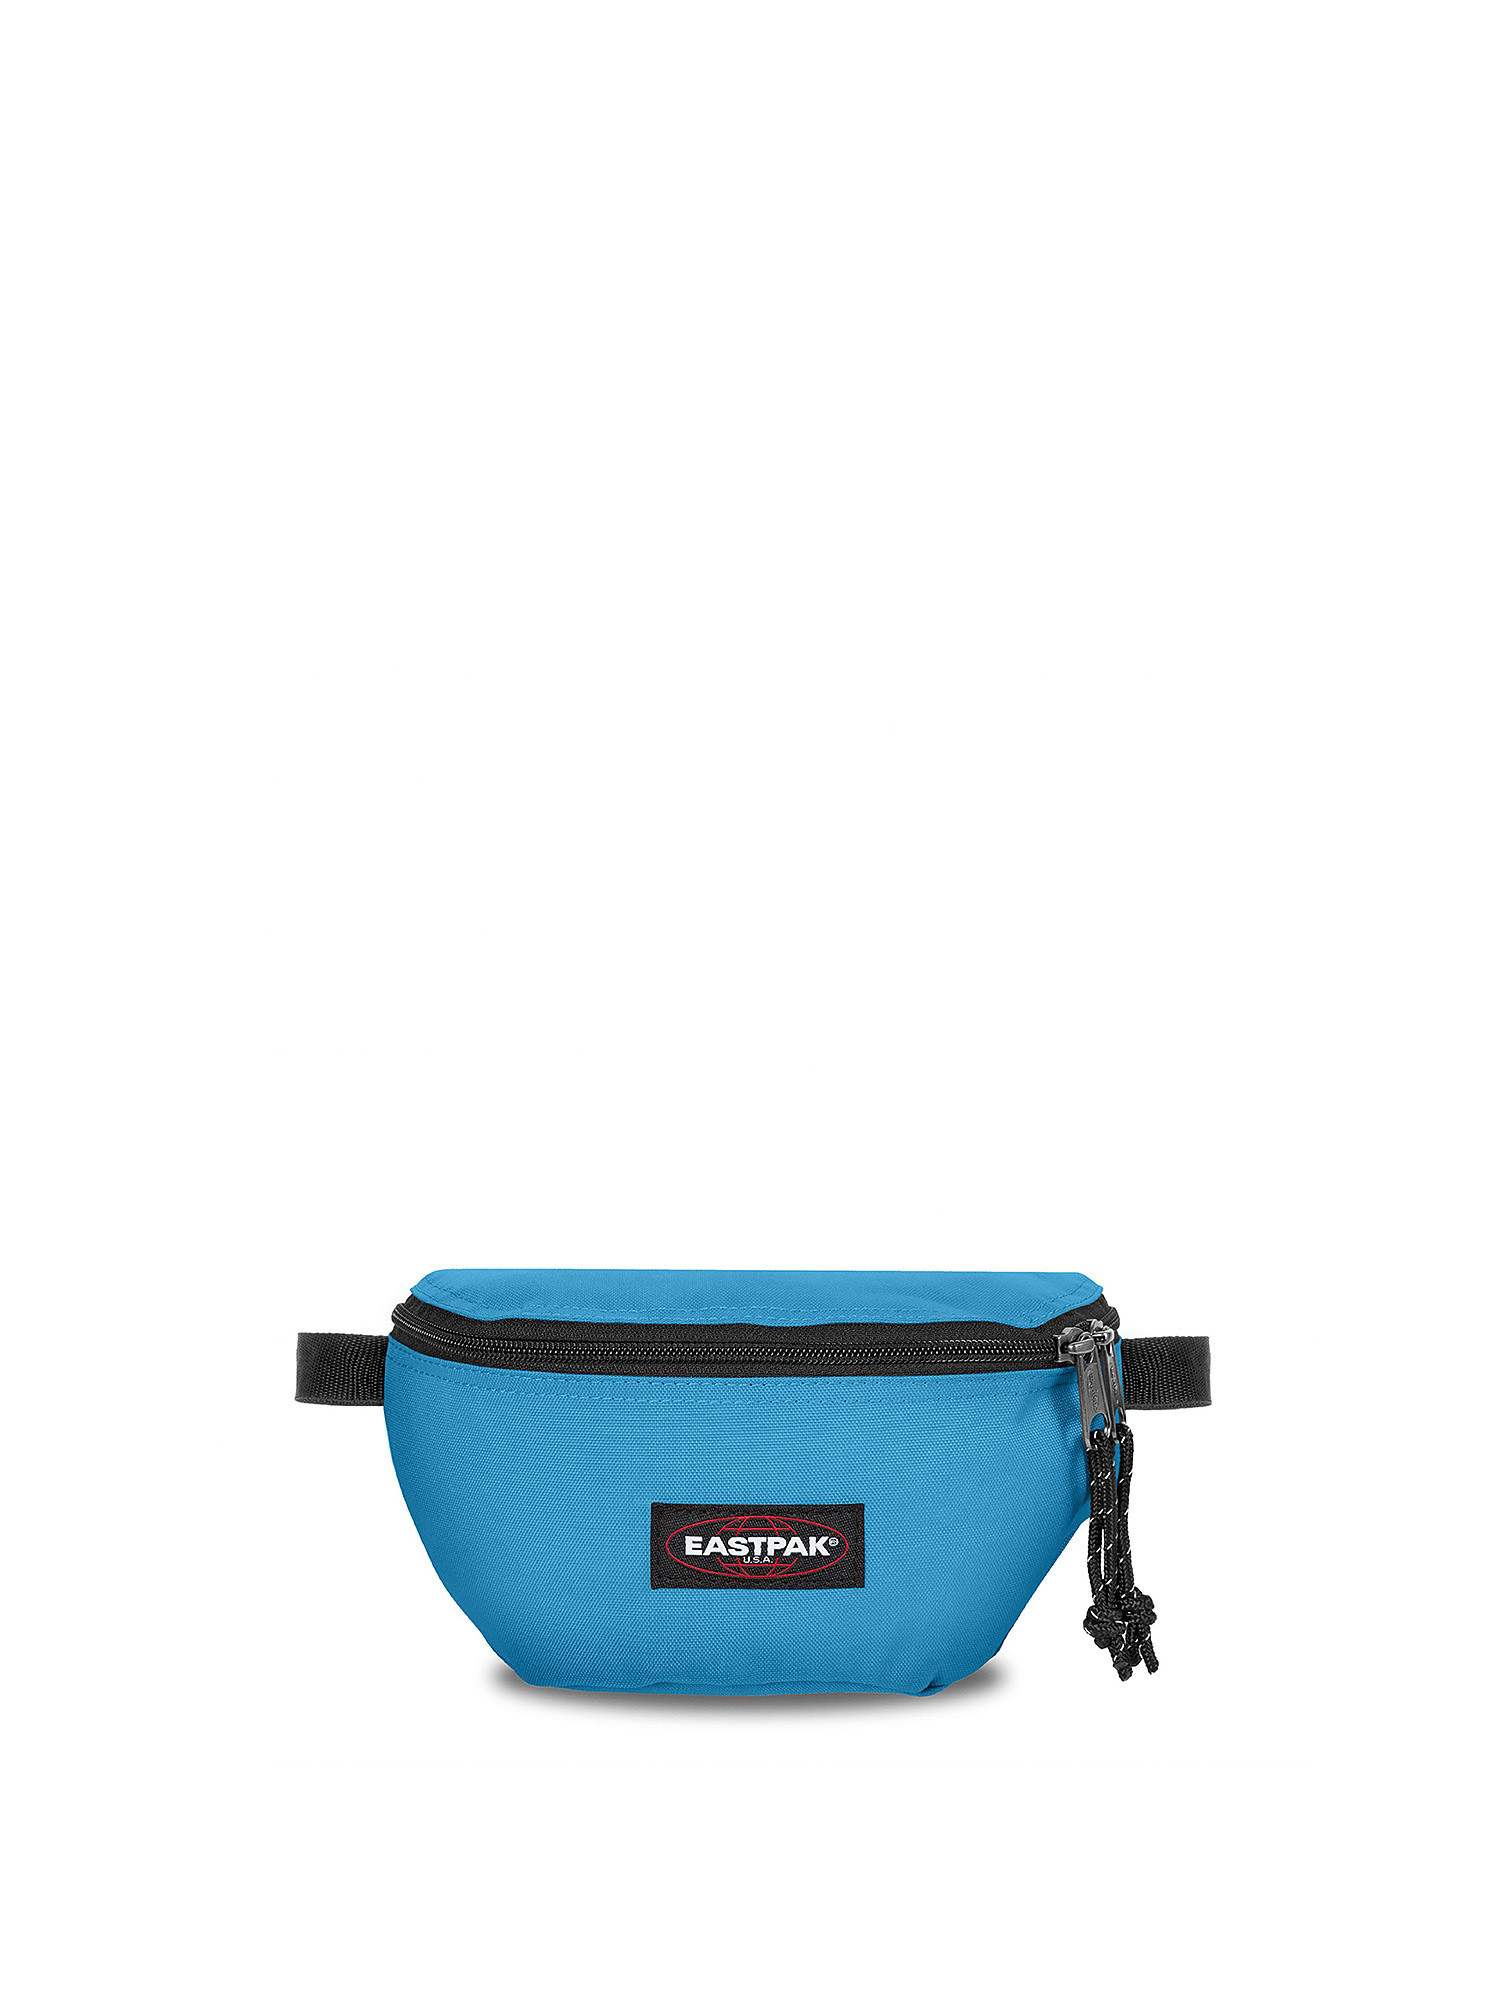 Eastpak - Springer Broad Blue Waist Bag, Blue Dark, large image number 0